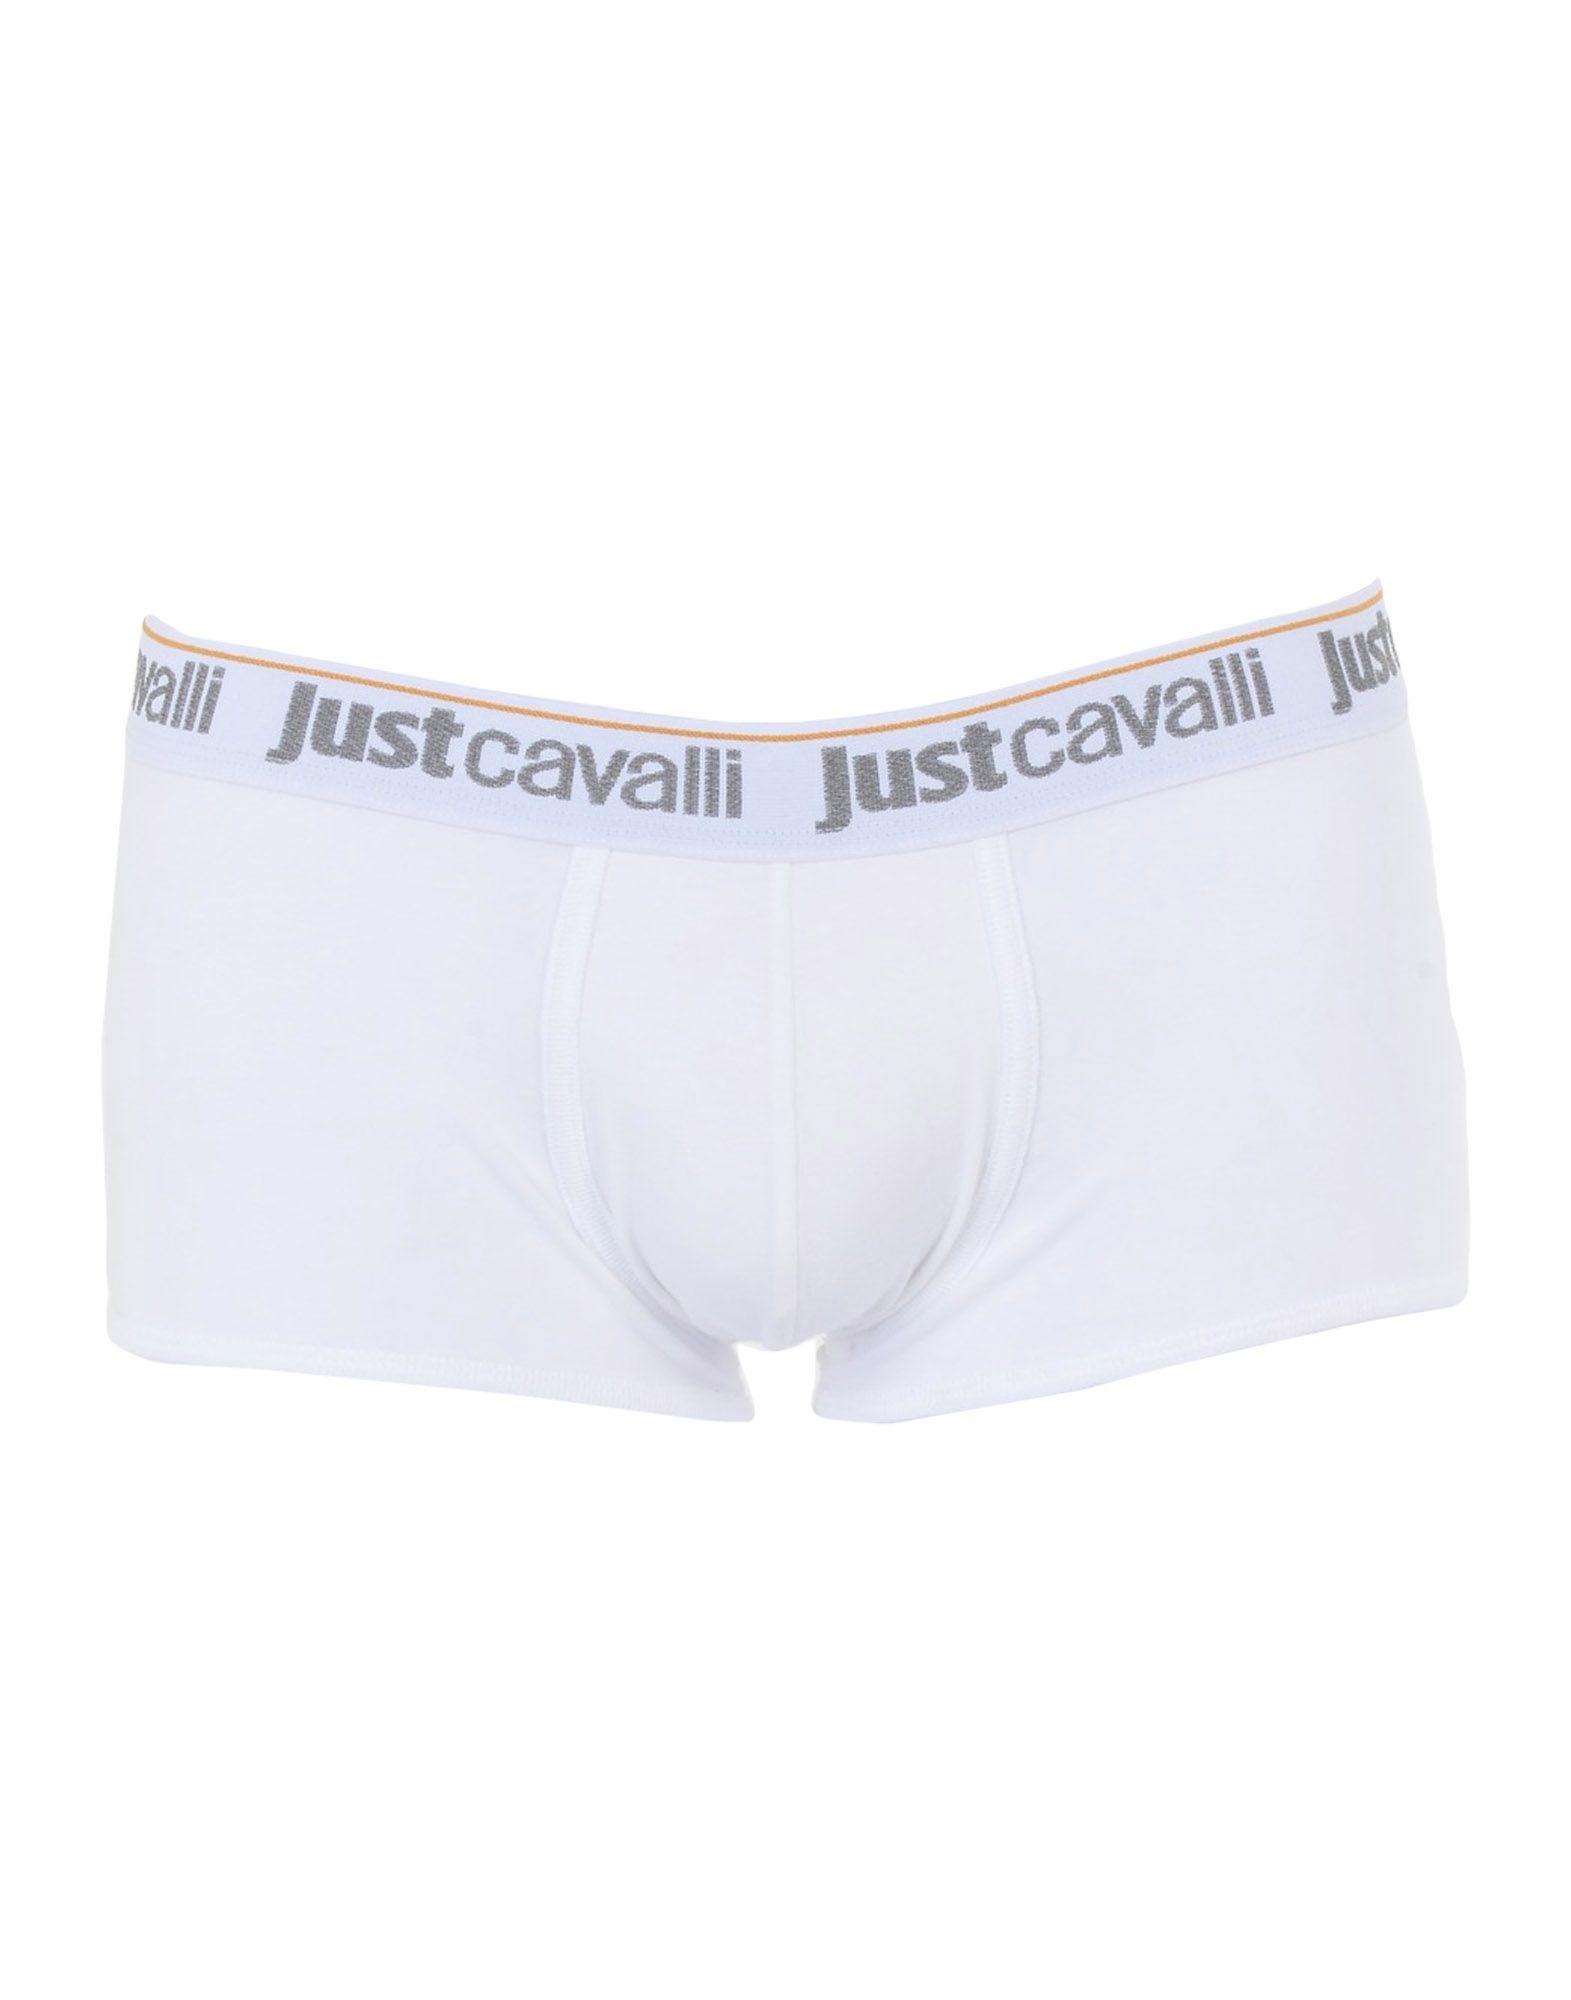 Just Cavalli Underwear Boxers In White | ModeSens